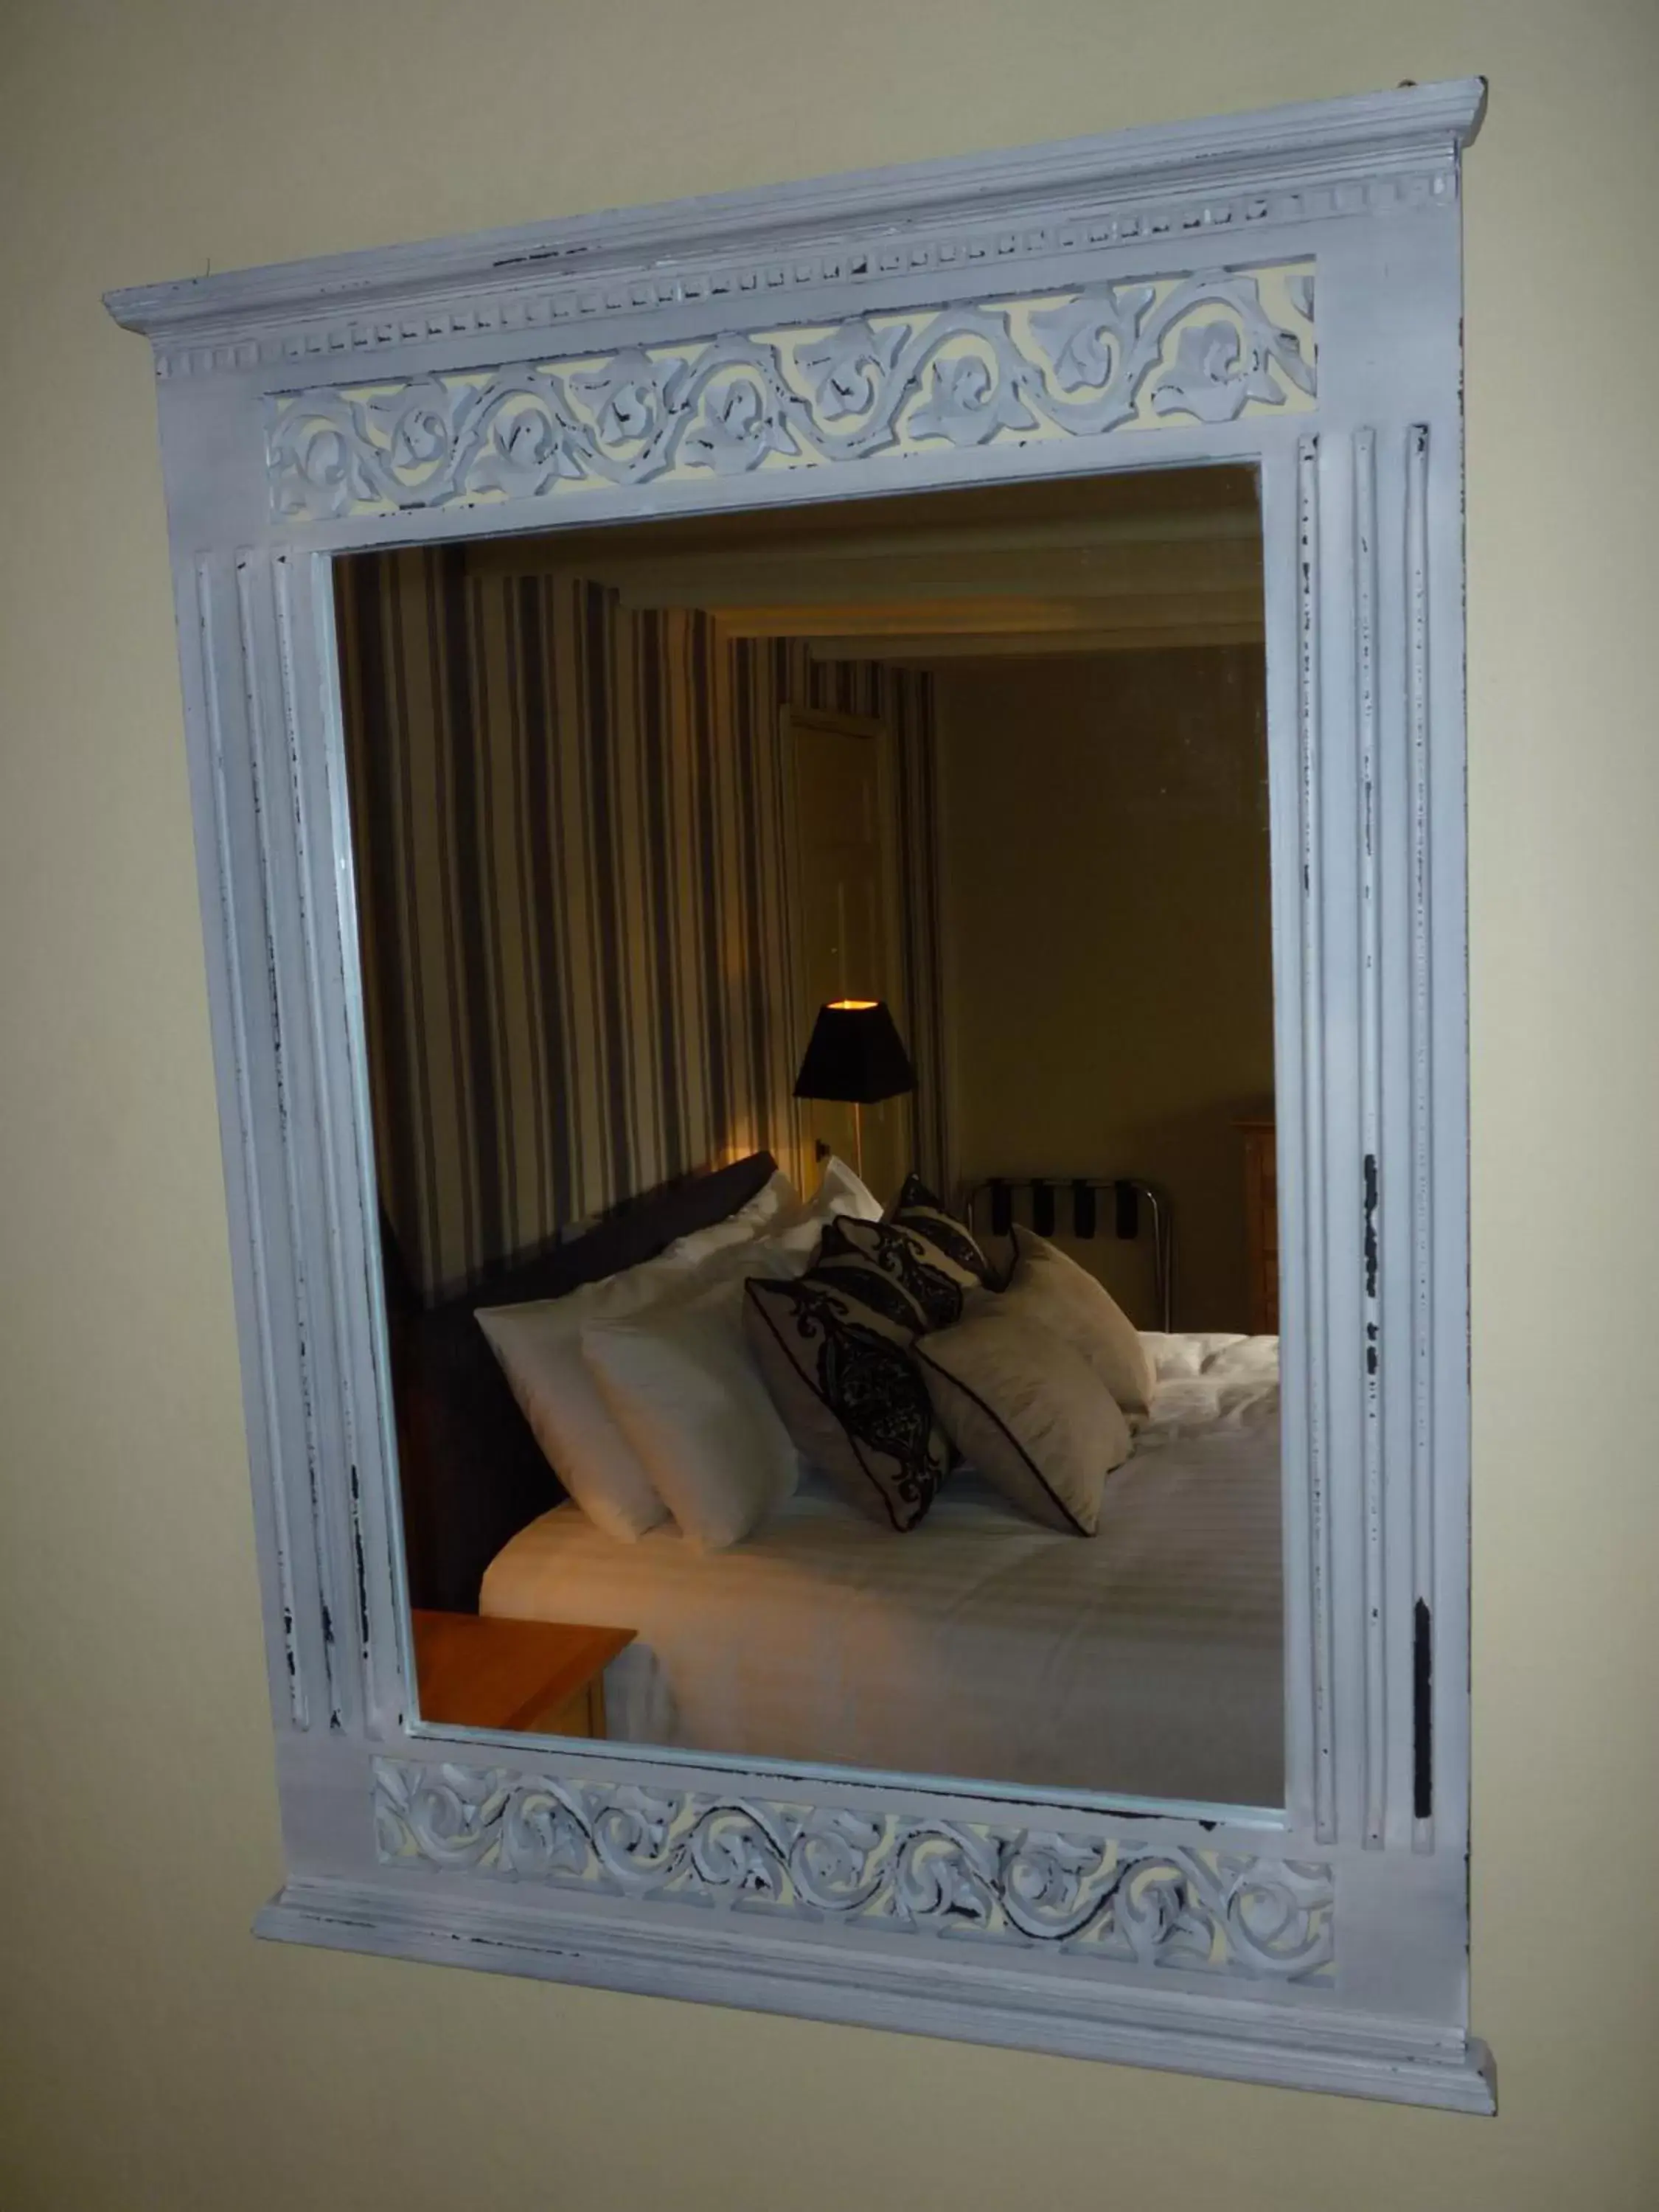 Bed in Royal Oak Inn